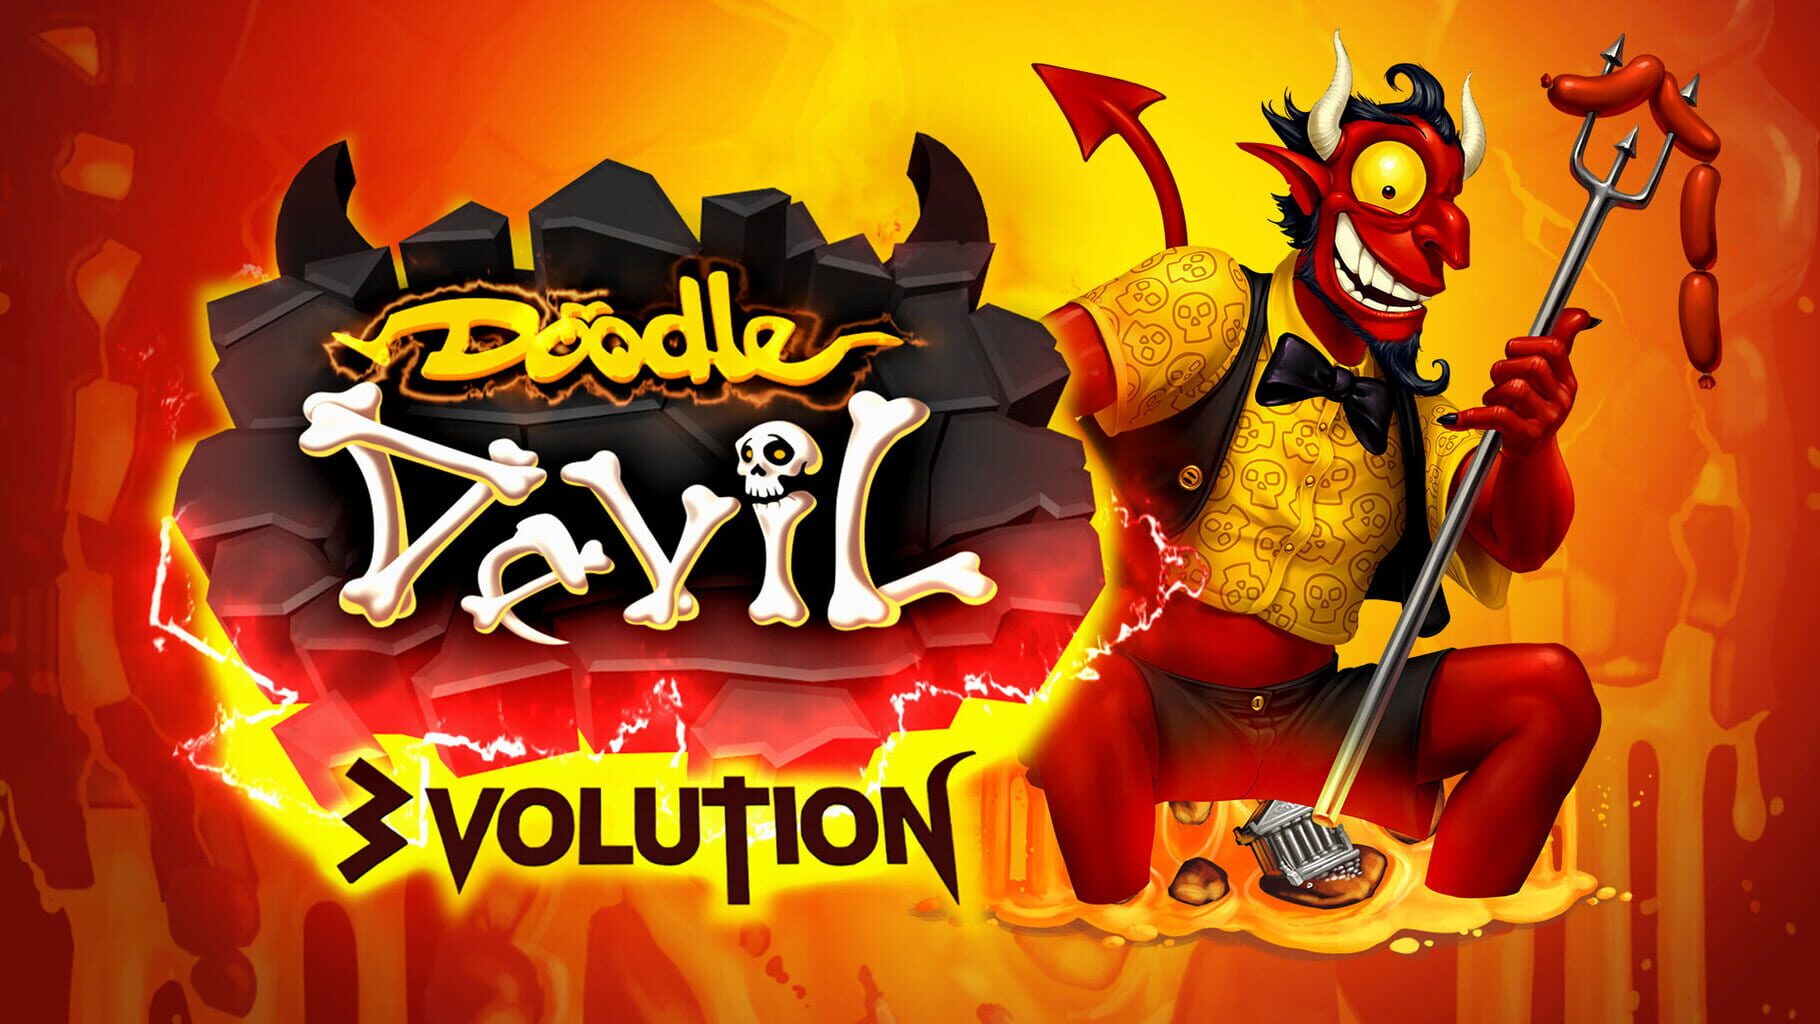 Doodle Devil: 3volution artwork